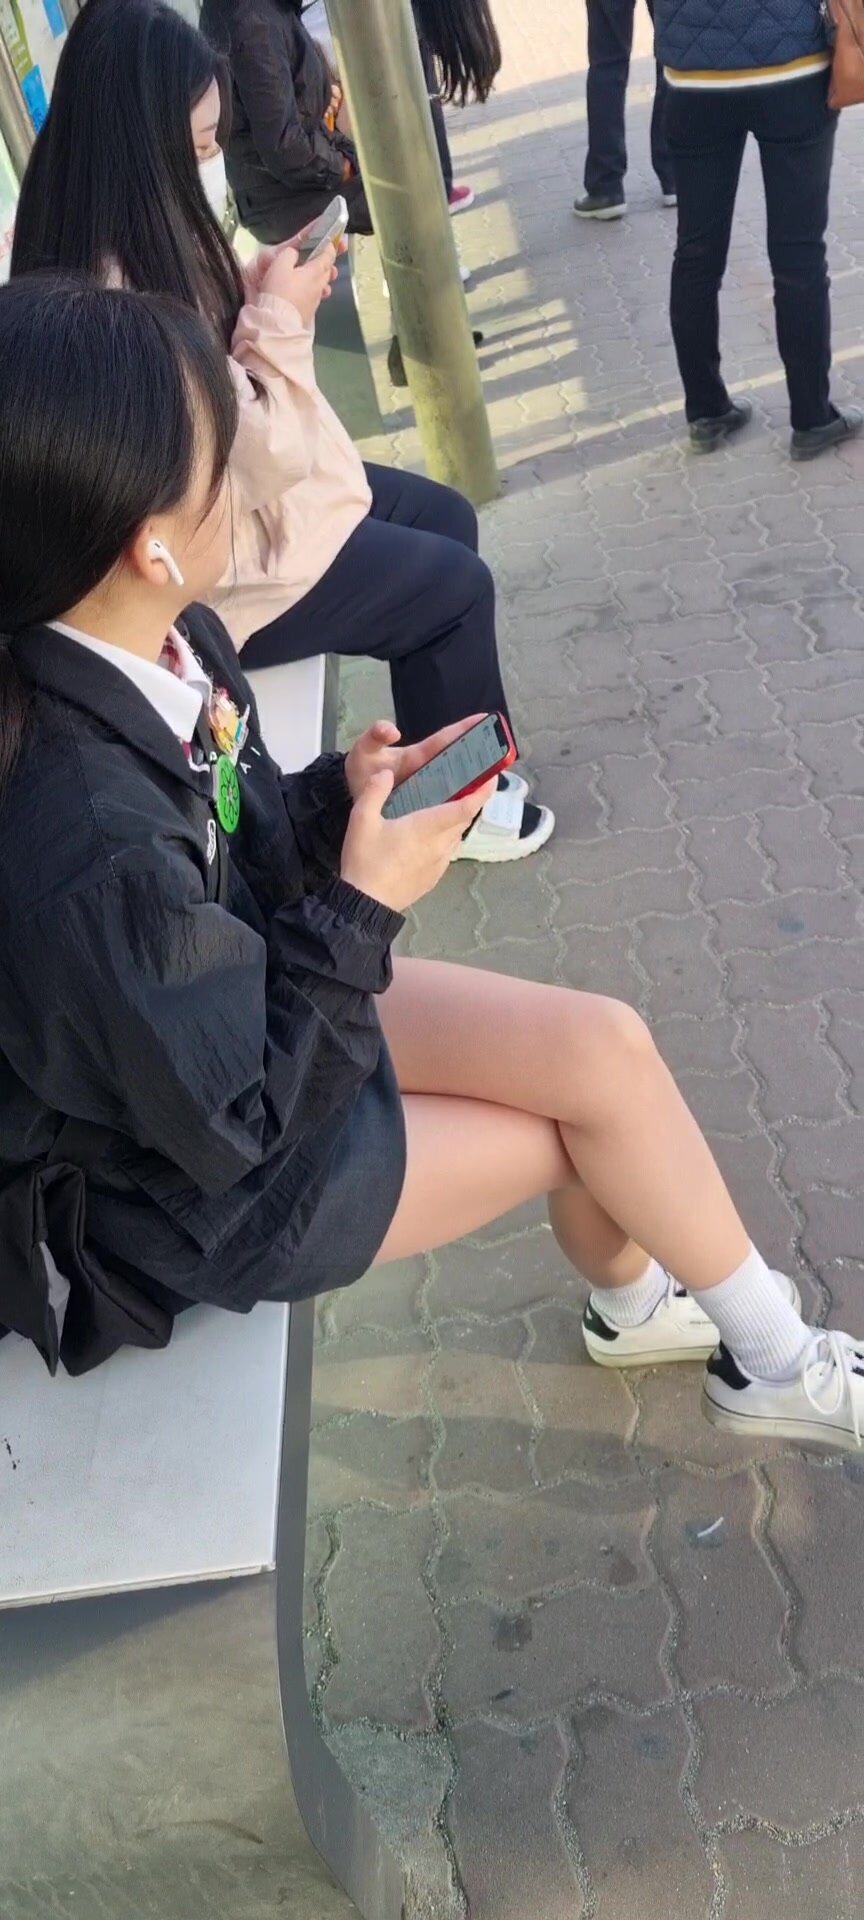 Korean school girl upskirt